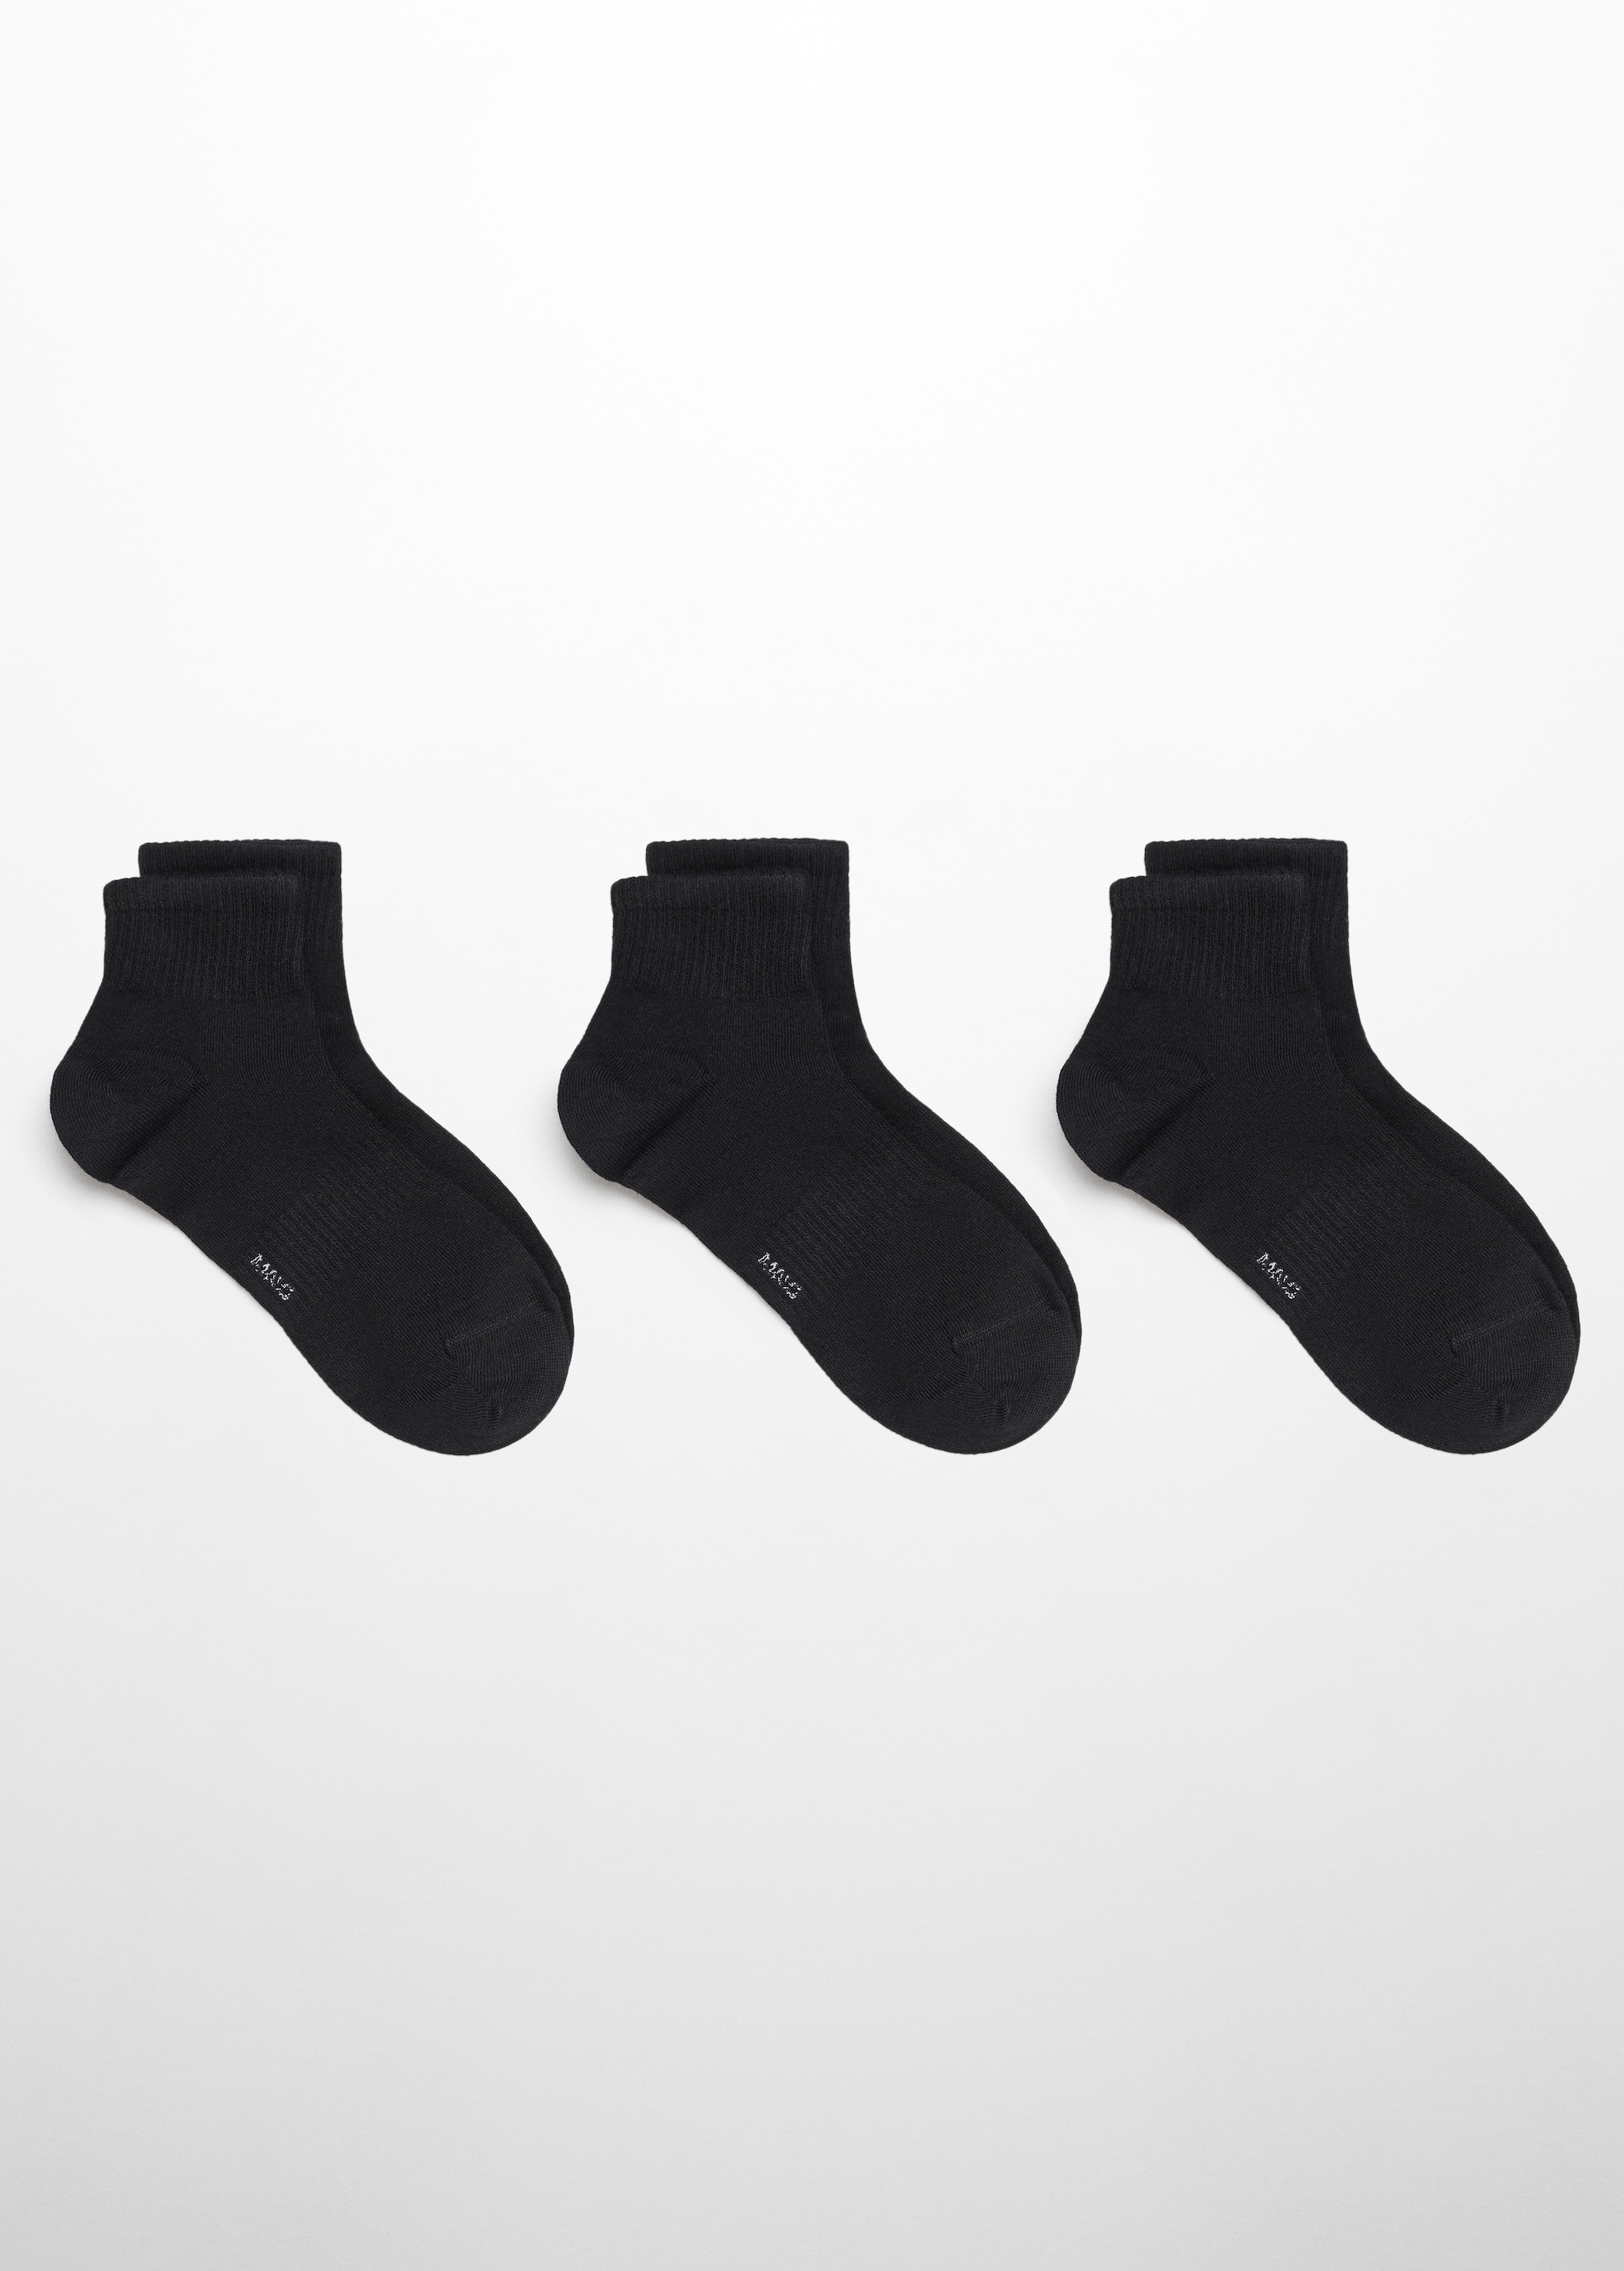 Pack 3 calzini cotone coste - Articolo senza modello